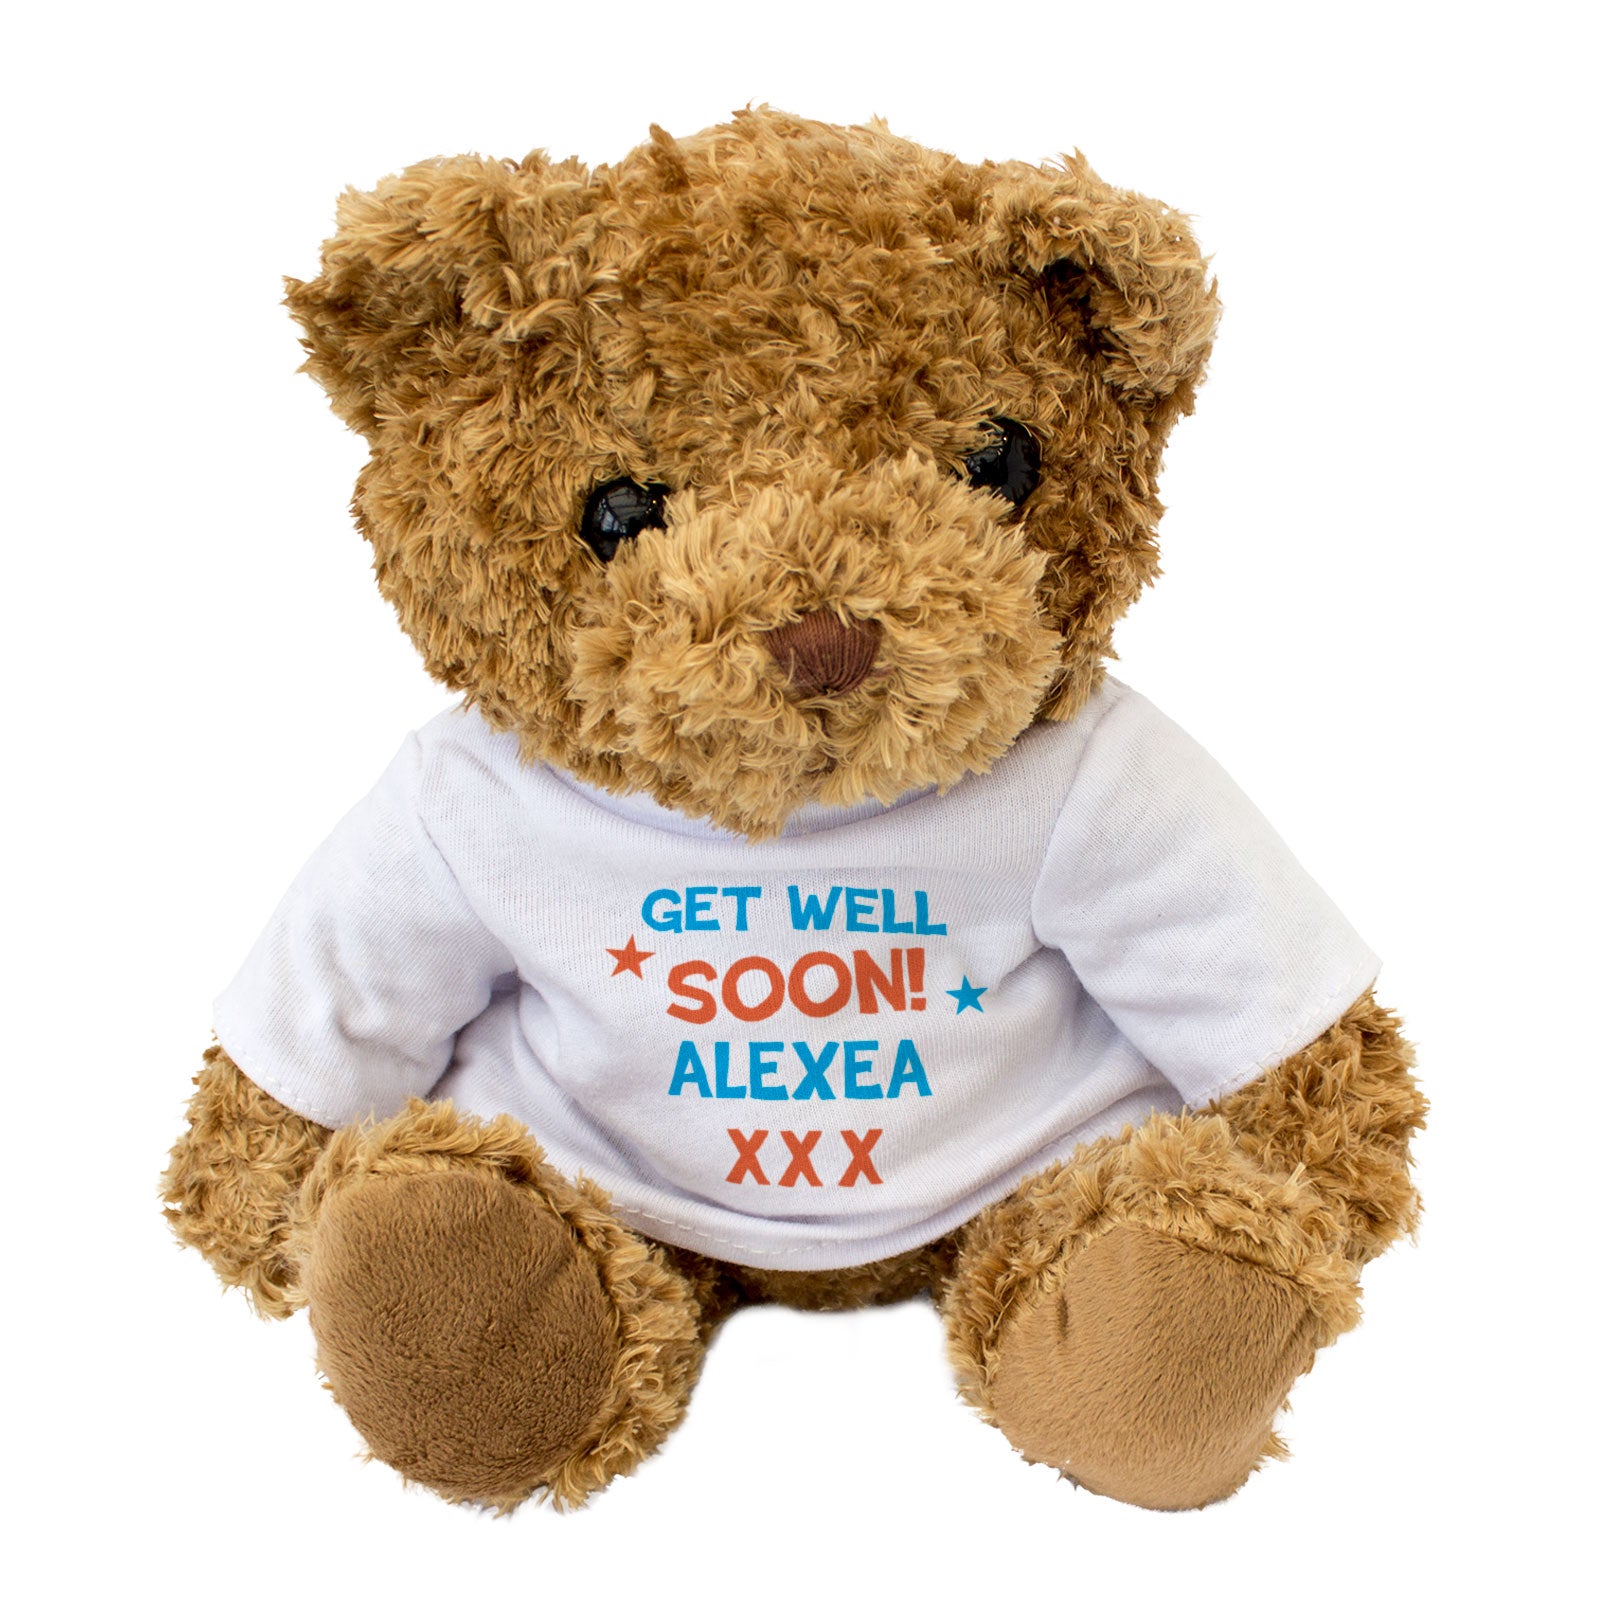 Get Well Soon Alexea - Teddy Bear